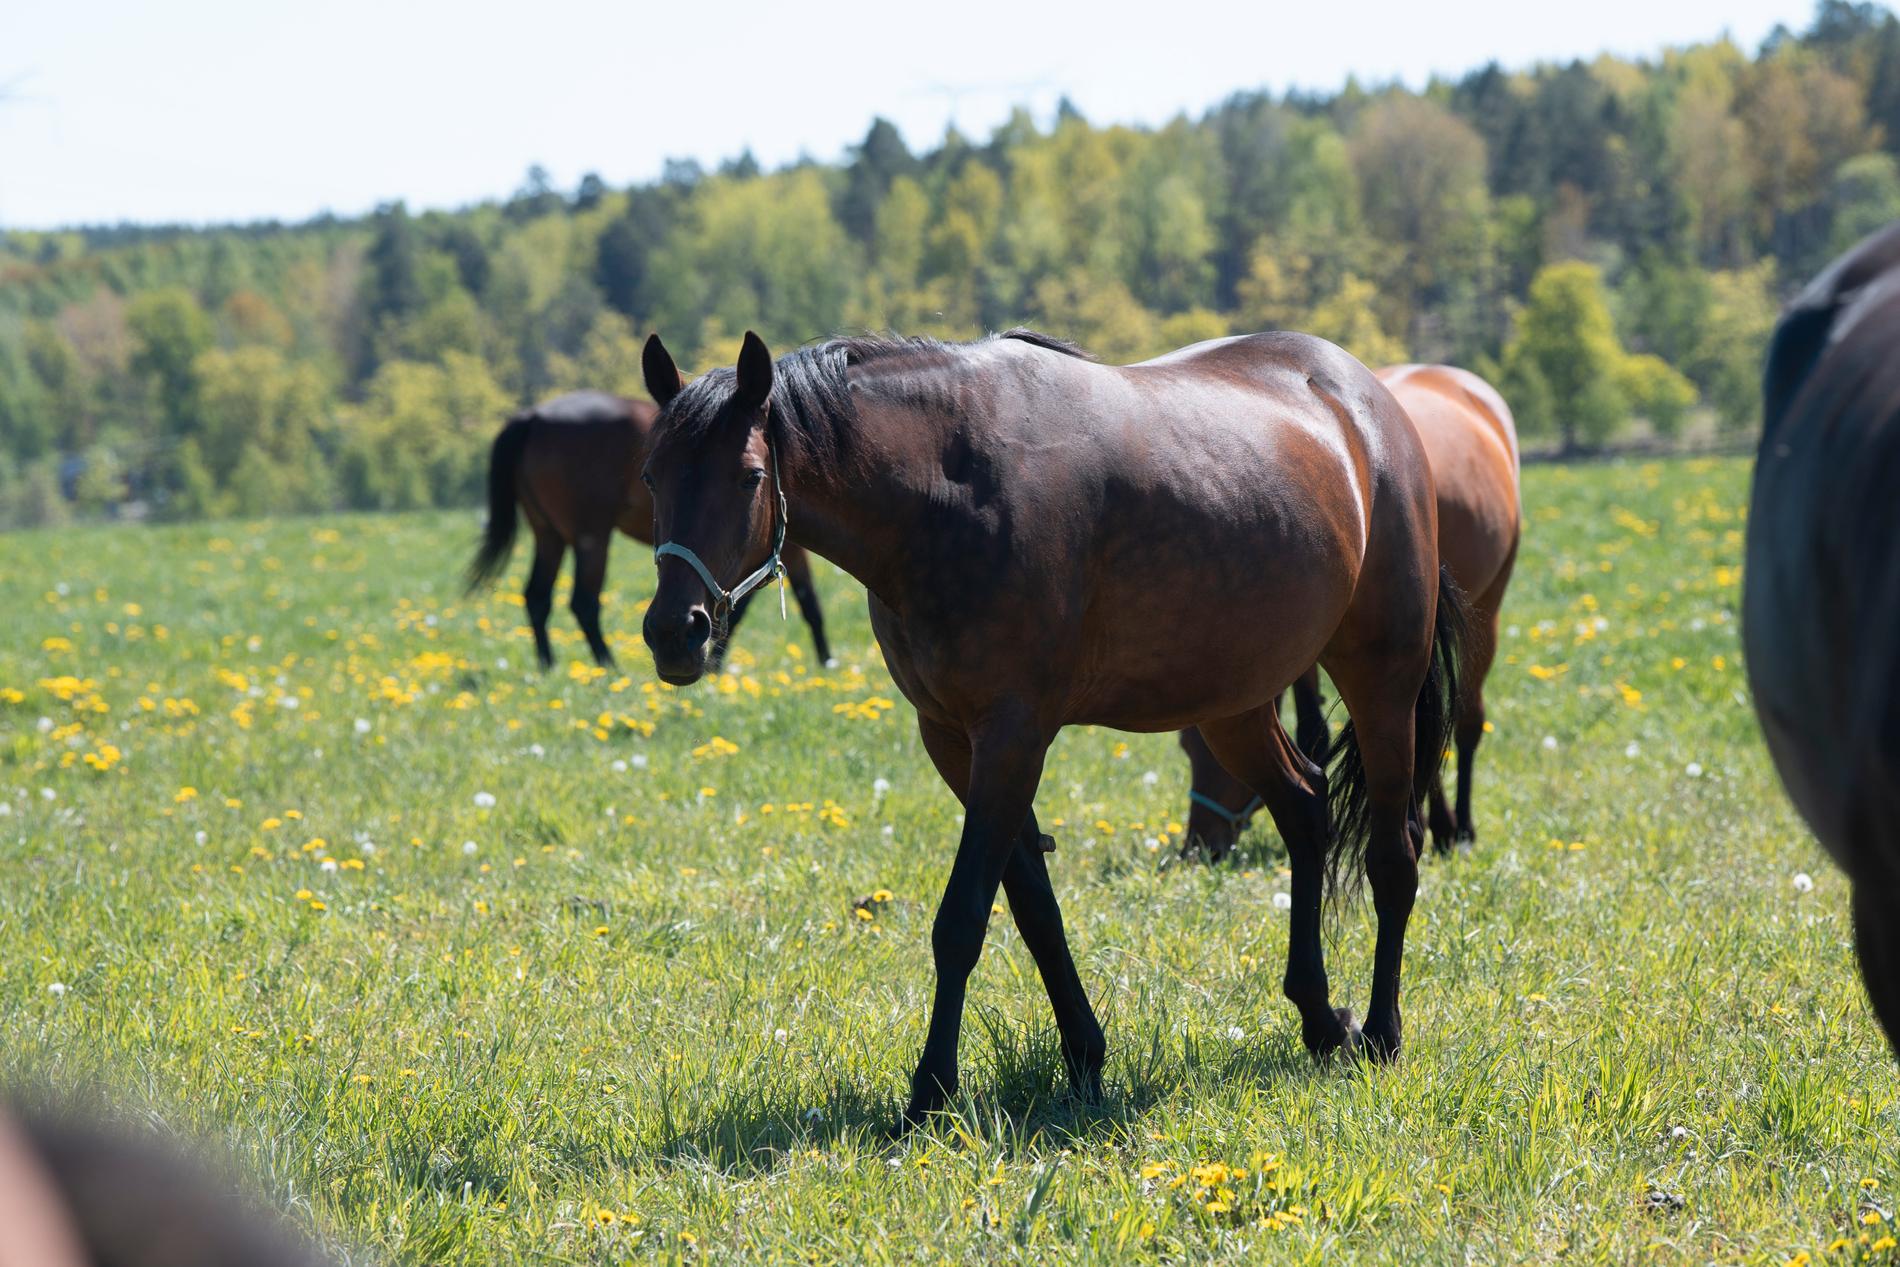 Hästar har pekats ut som en bov i dramat om de lokala orsakerna till övergödning. Men förslag som framkommer i utredningen har inte varit populära inom hästnäringen. Arkivbild.